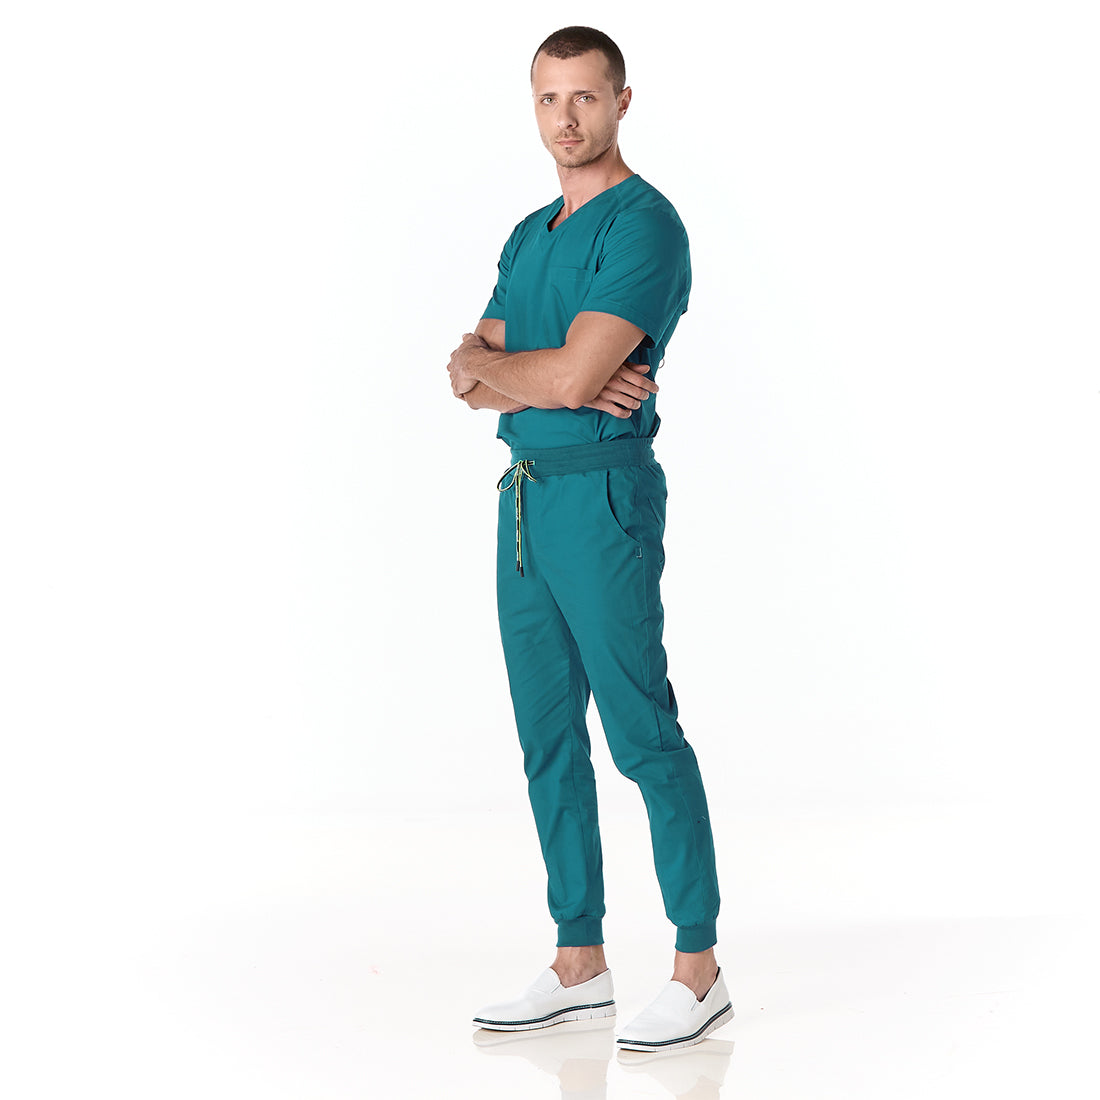 Hombre vistiendo conjunto sanitario color azul turquesa con escote en v y pantalon tipo jogger